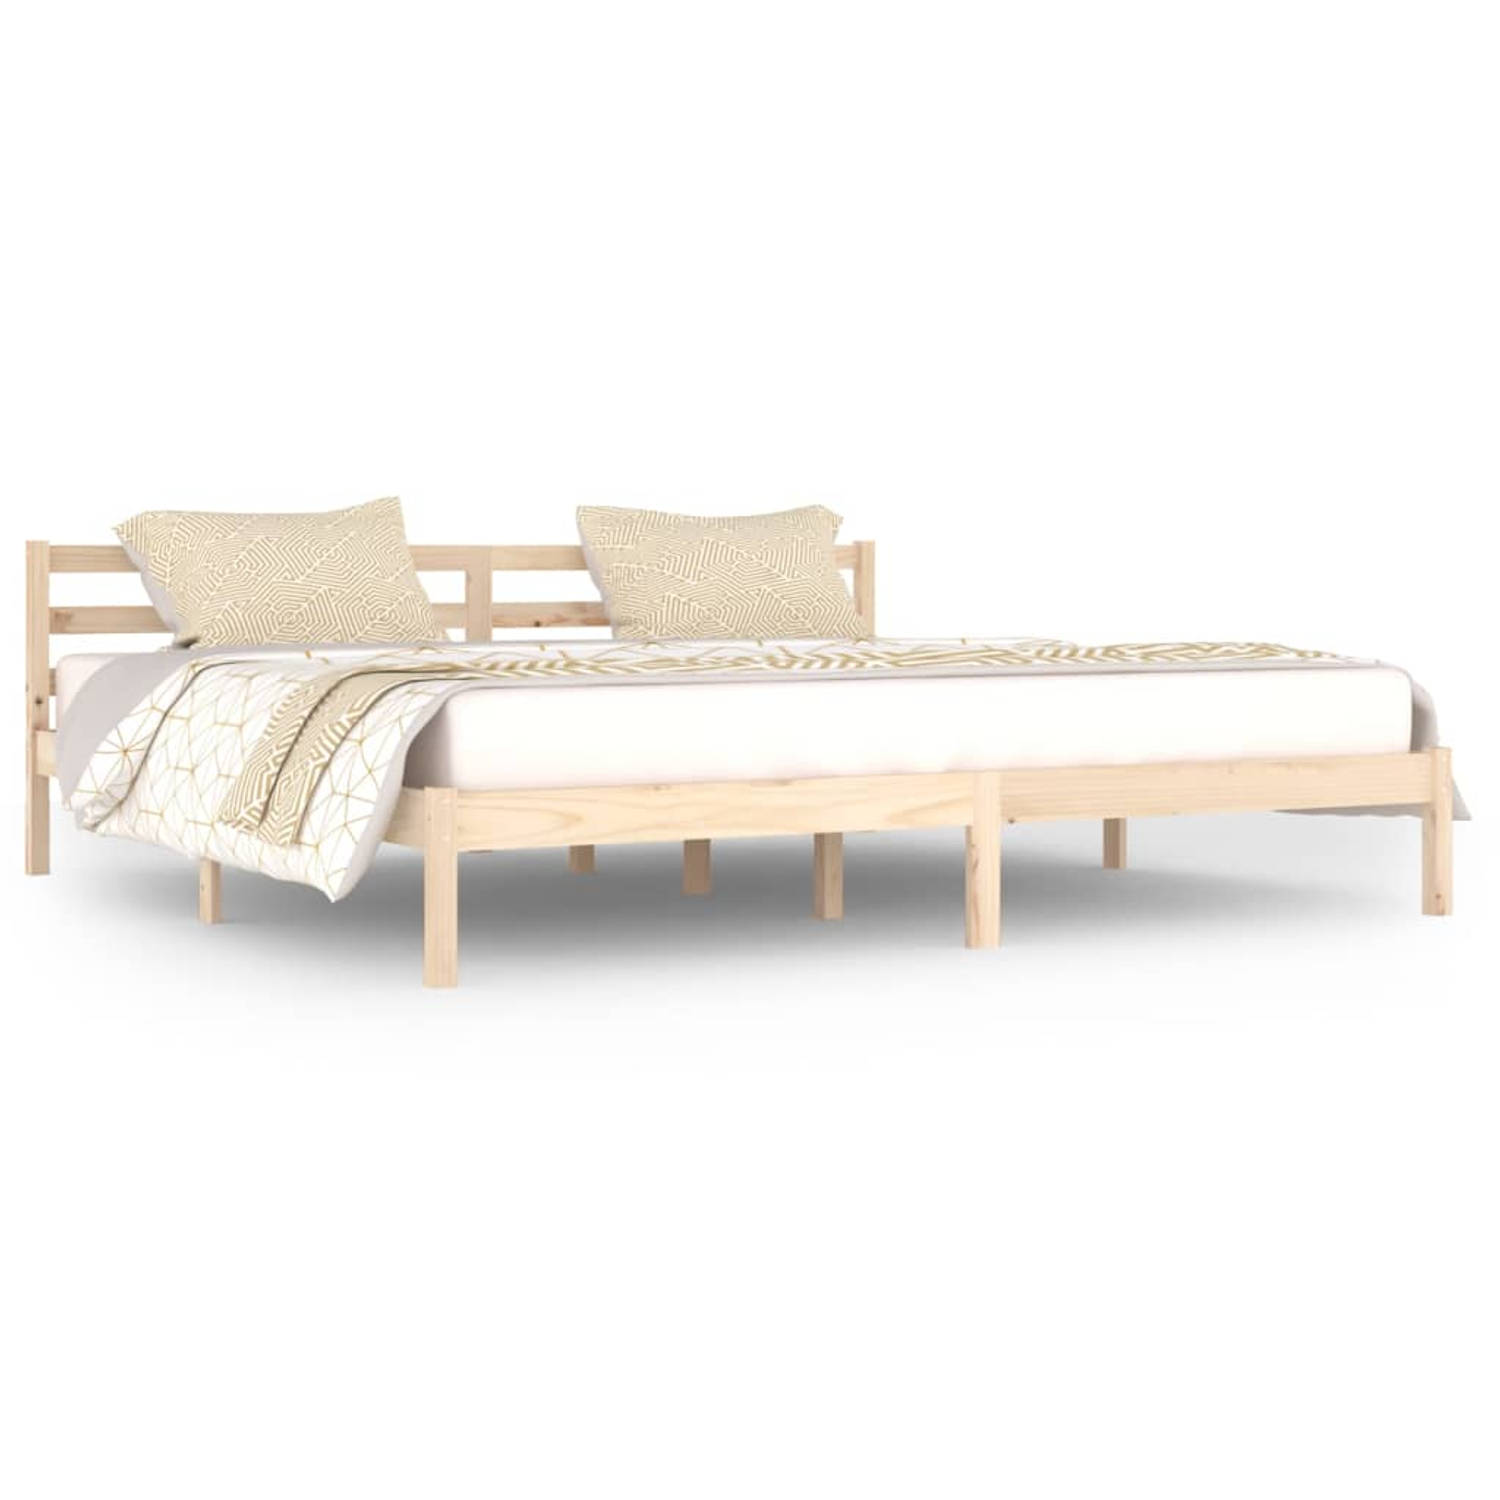 The Living Store Bedframe massief grenenhout 200x200 cm - Bedframe - Bedframes - Bed - Bedbodem - Ledikant - Bed Frame - Massief Houten Bedframe - Slaapmeubel - Bedden - Bedbodems